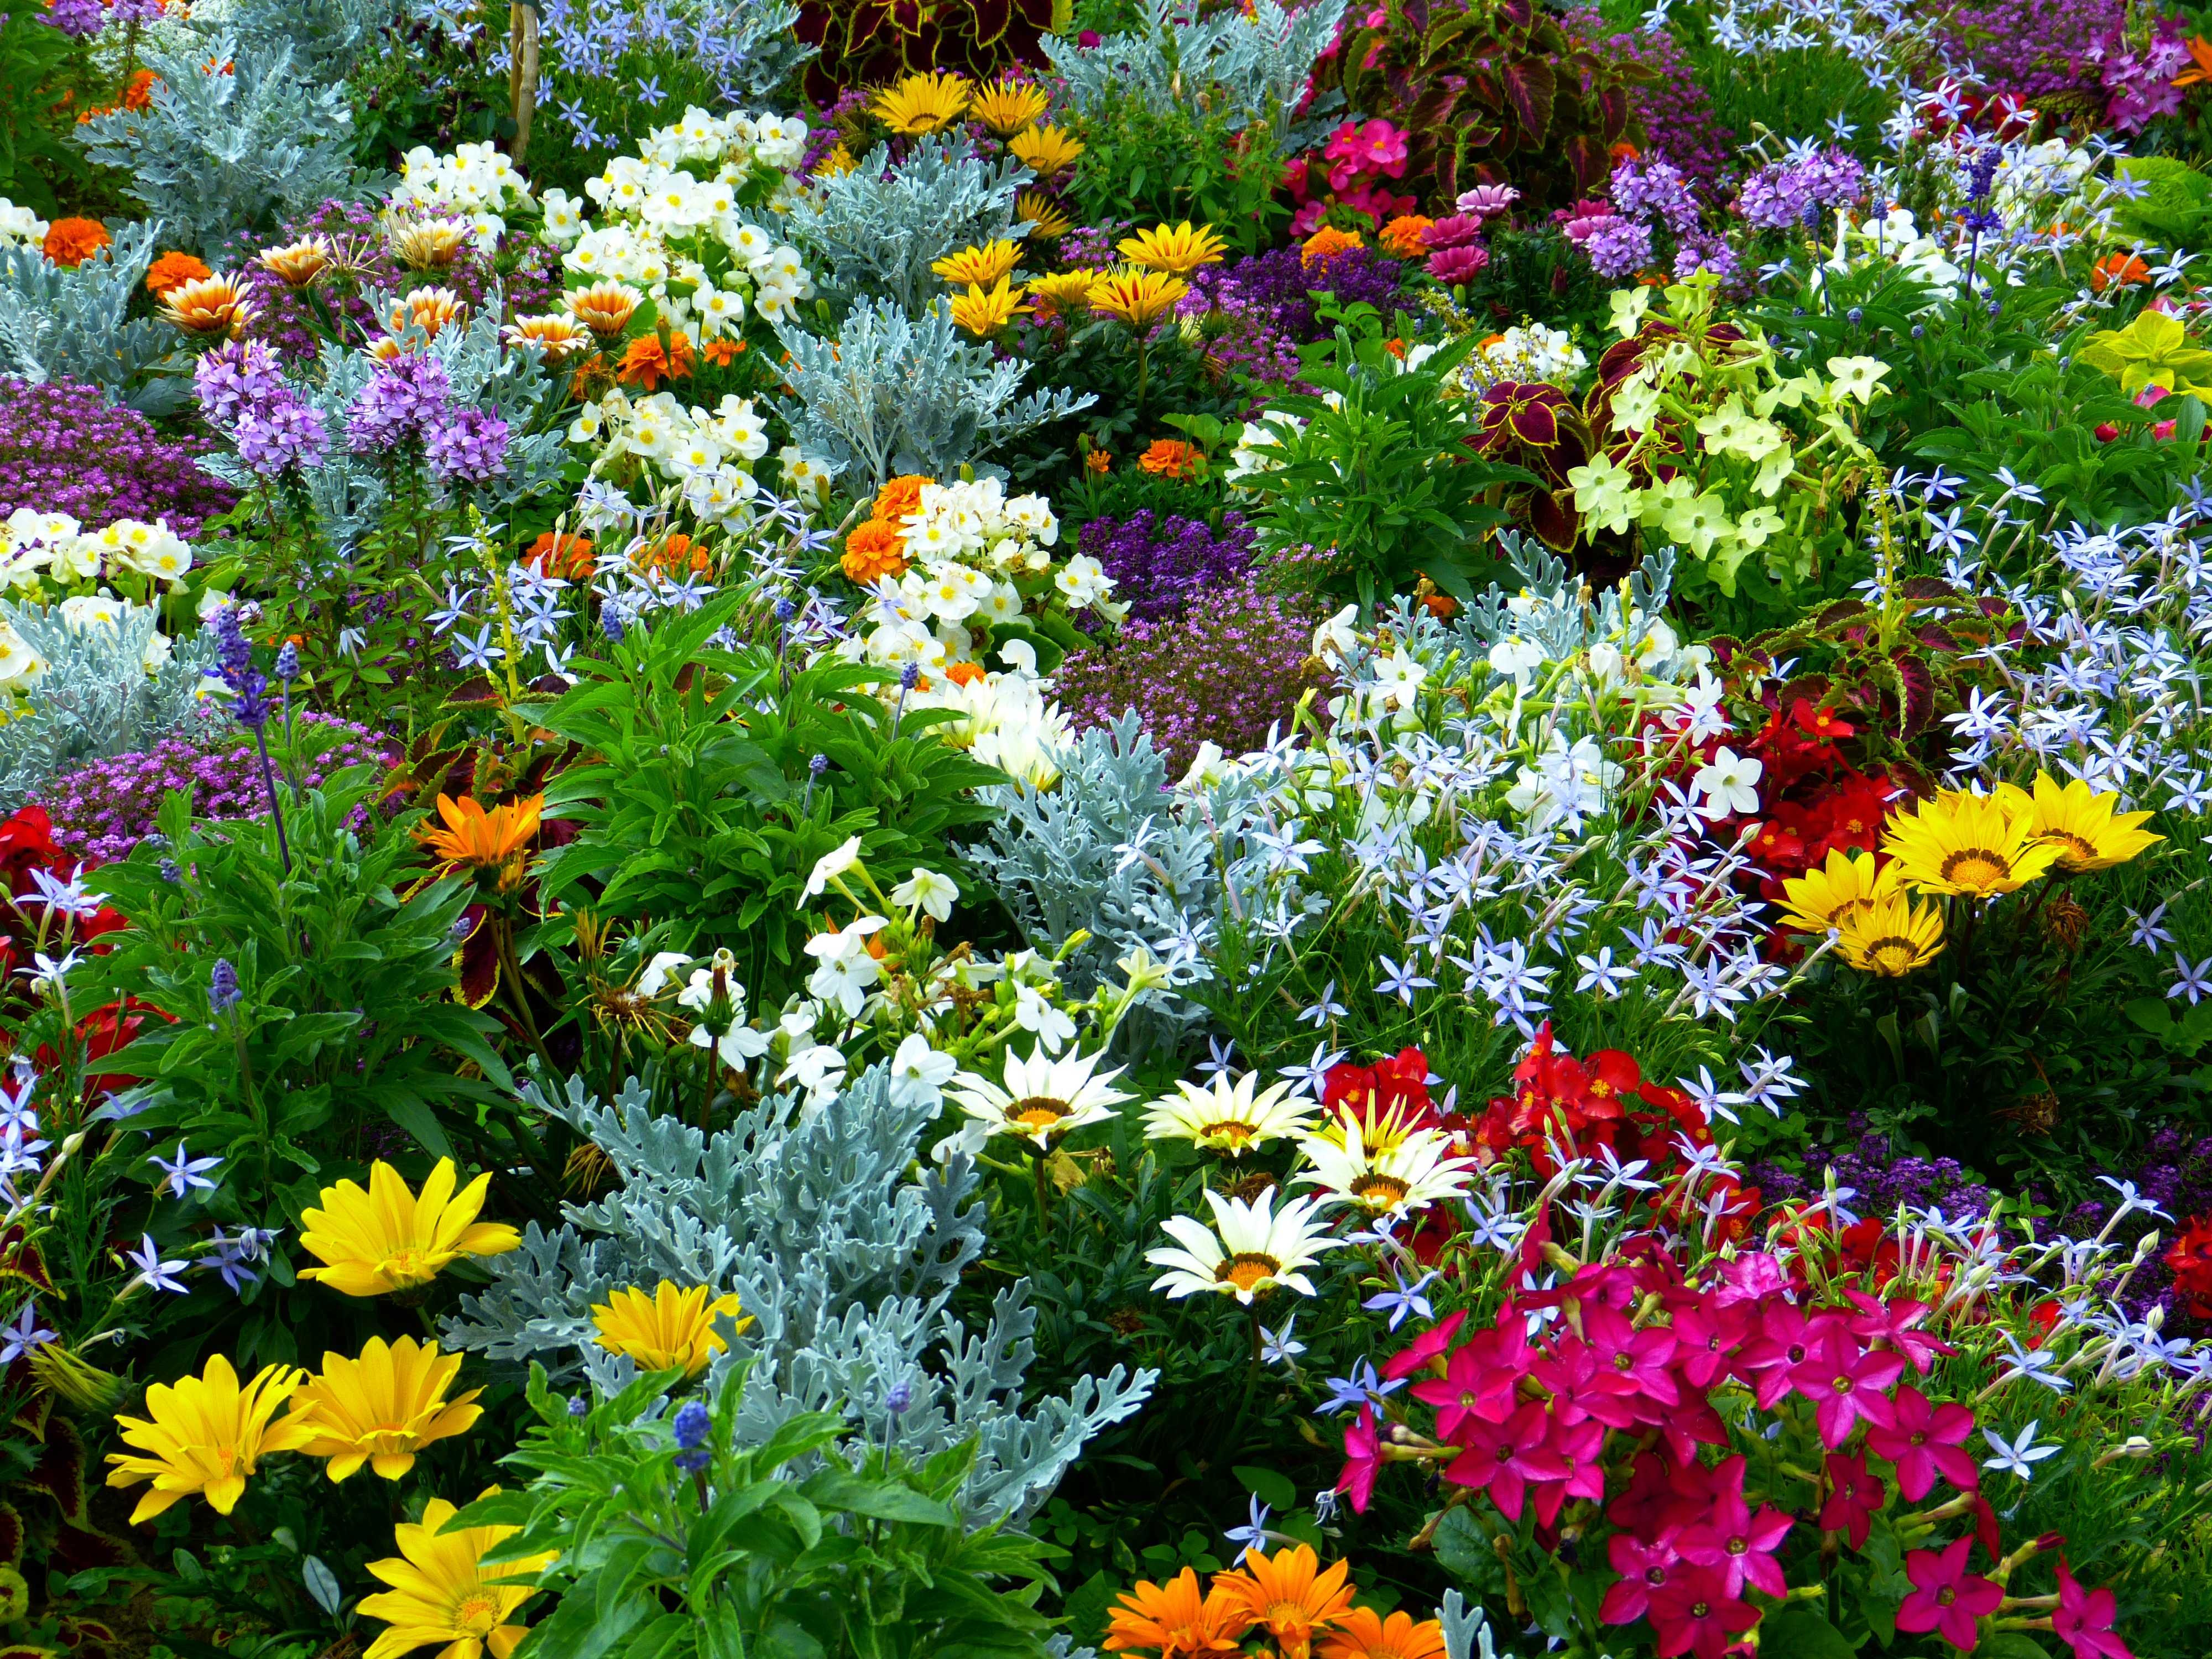 Лучшие многолетники, цветущие все лето - 10 примеров цветов с фото, названиями и описанием